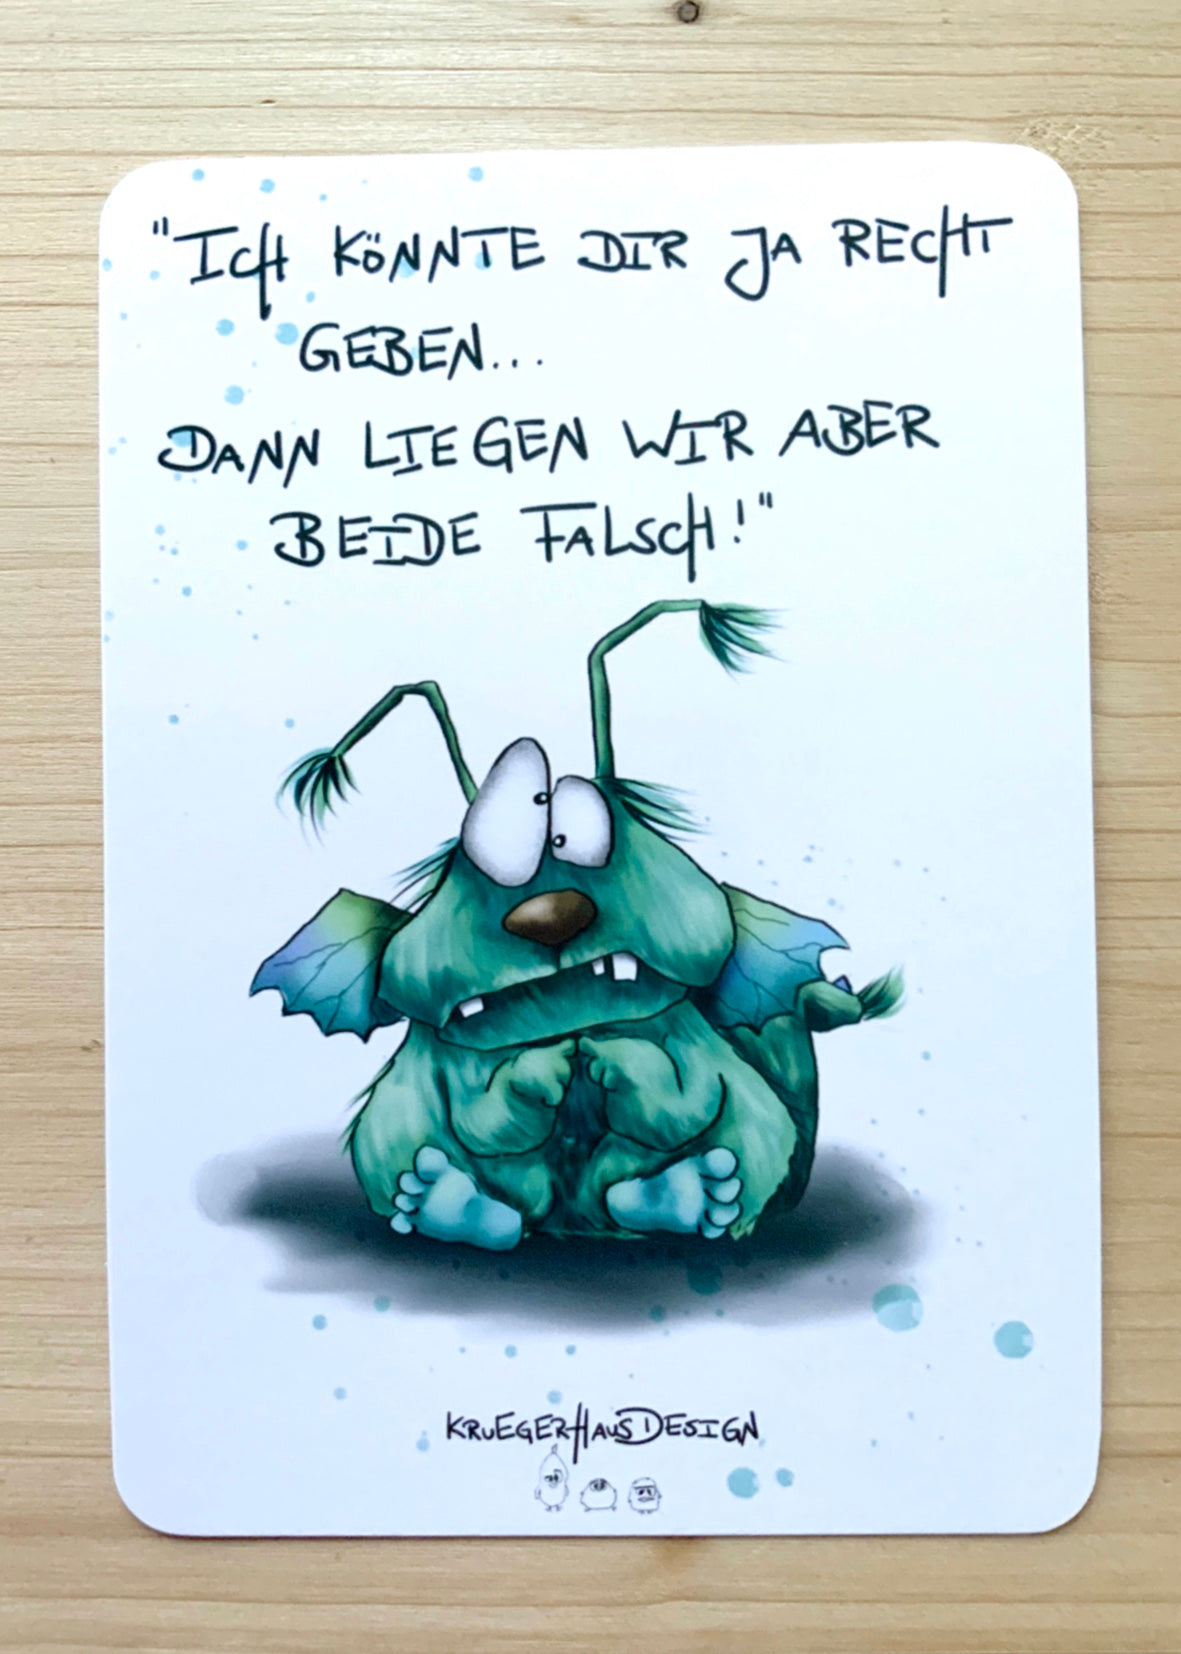 Postkarte Monster Kruegerhausdesign „Ich könnte dir ja recht….“